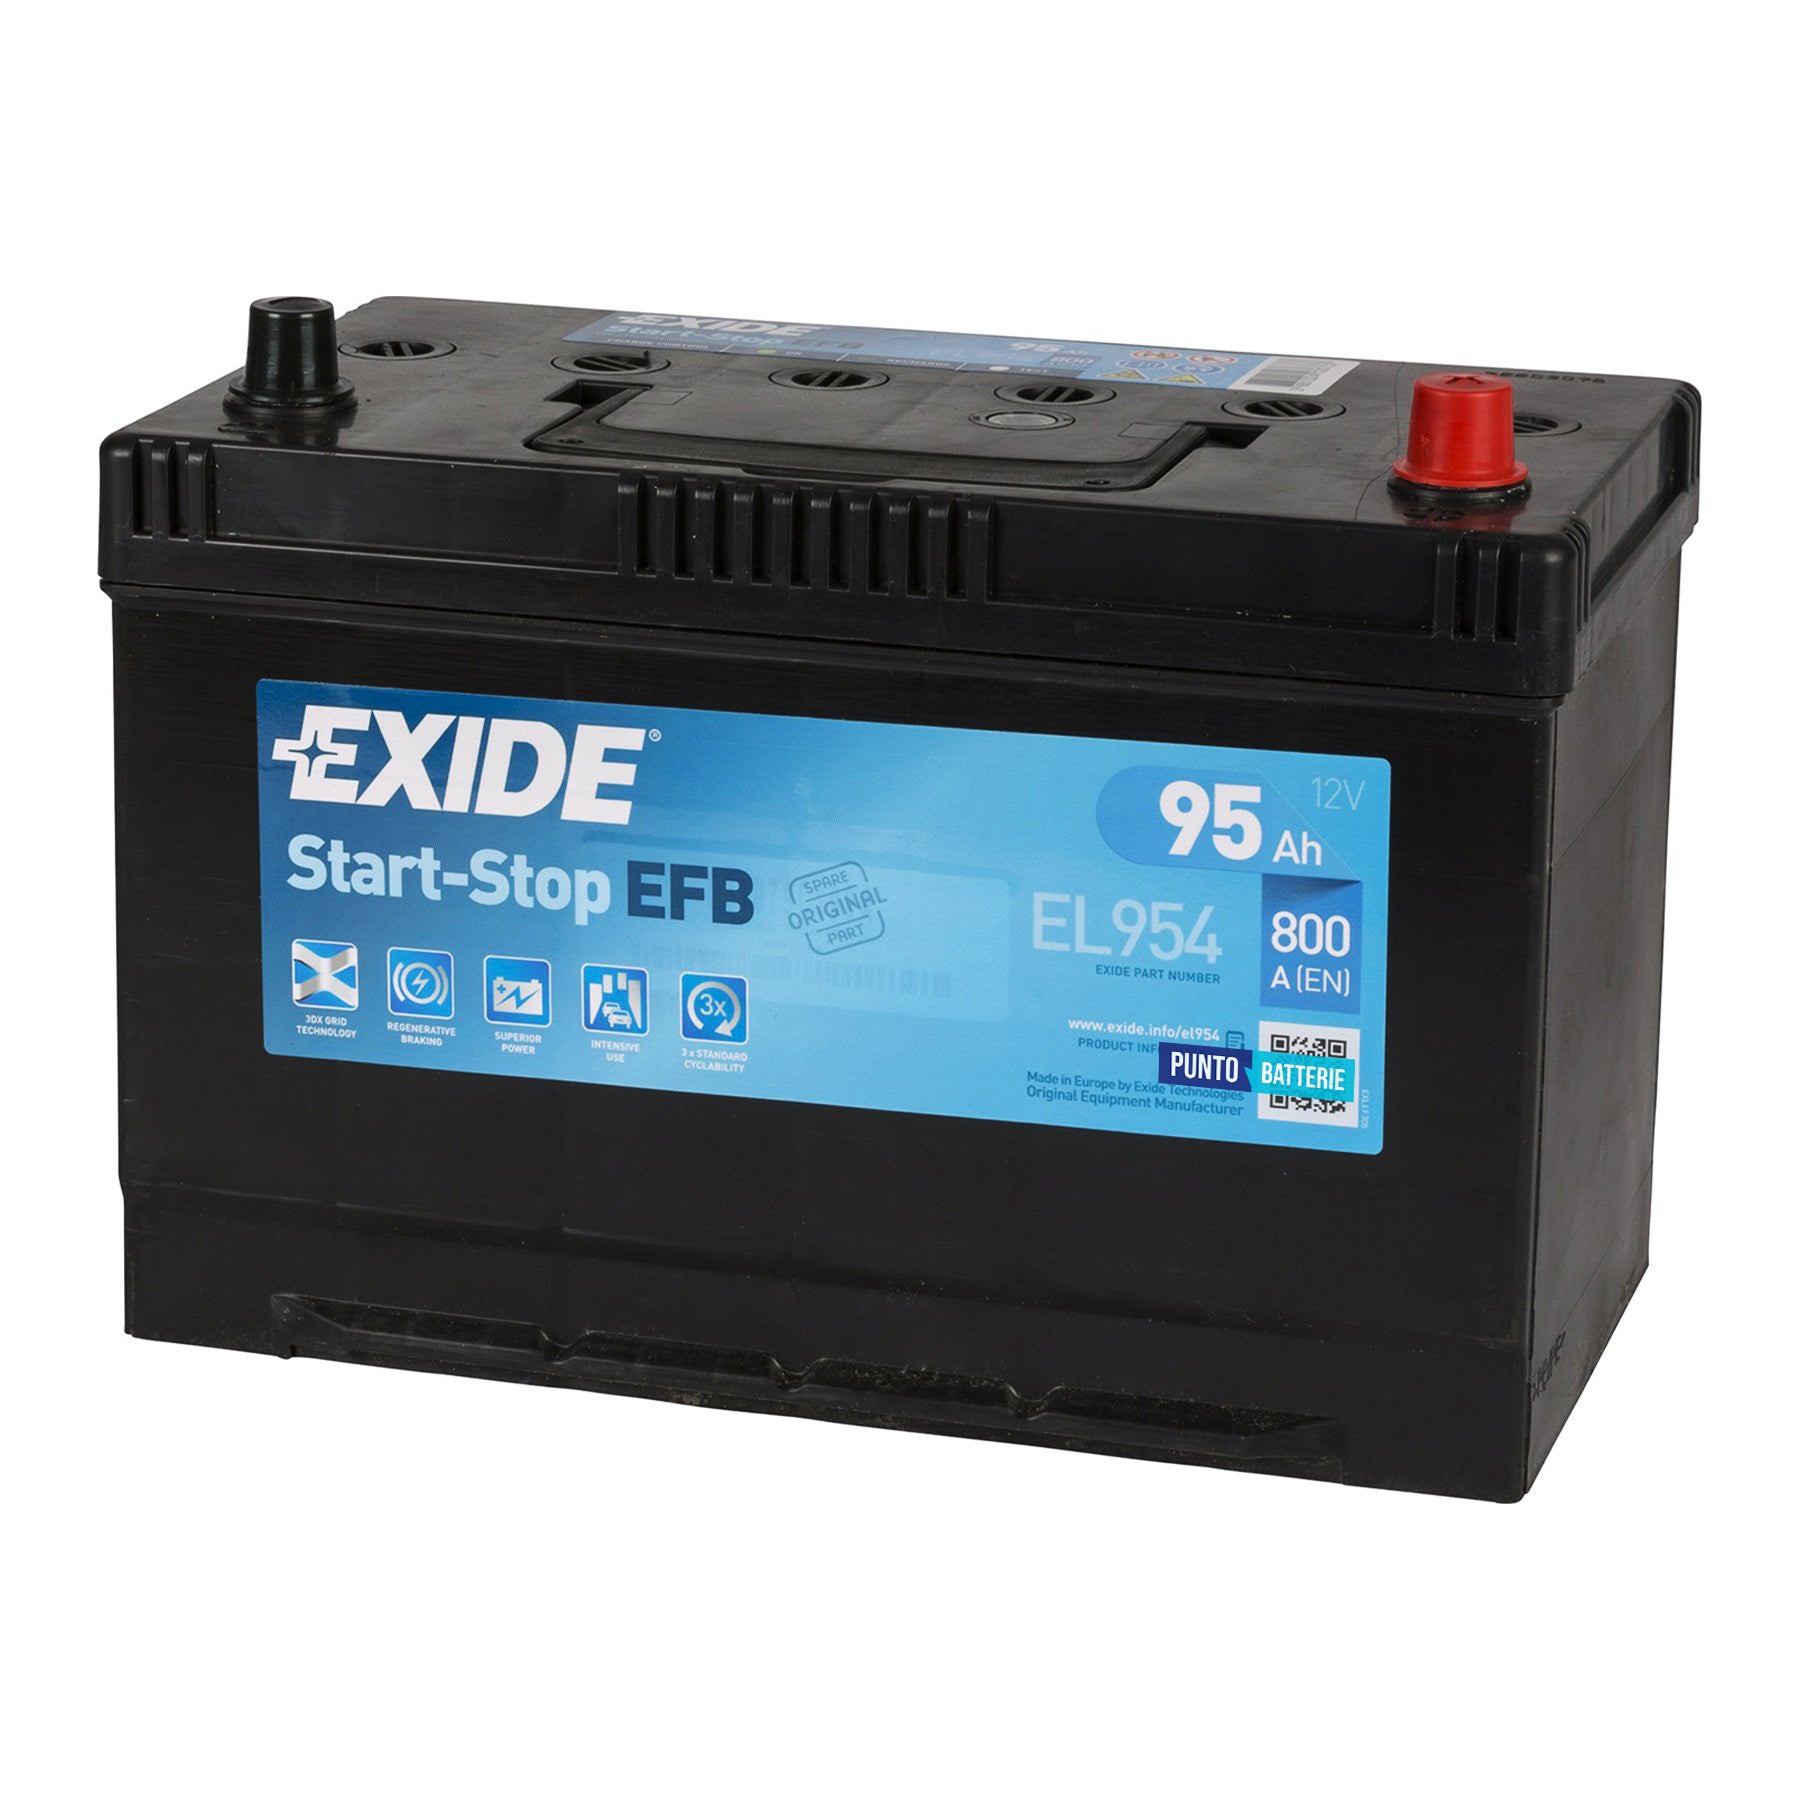 Batteria originale Exide EFB EL954, dimensioni 306 x 173 x 222, polo positivo a destra, 12 volt, 80 amperora, 782 ampere, EFB. Batteria per auto e veicoli leggeri con start e stop.